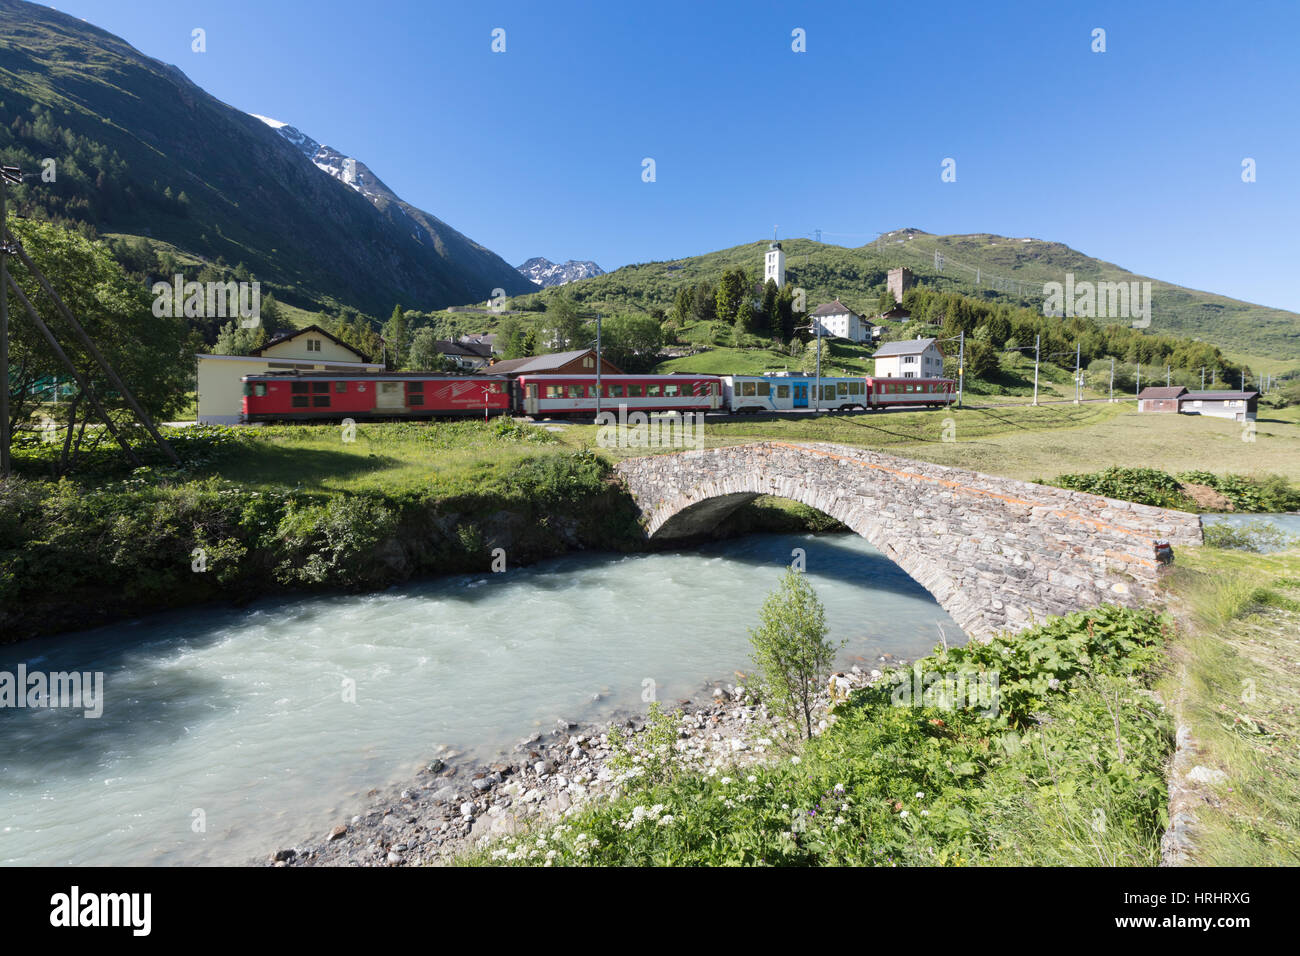 Typische rote Schweizer Schulen an Hospental Viadukt umgeben von Creek und grüne Wiesen, Andermatt, Kanton Uri, Schweiz Stockfoto